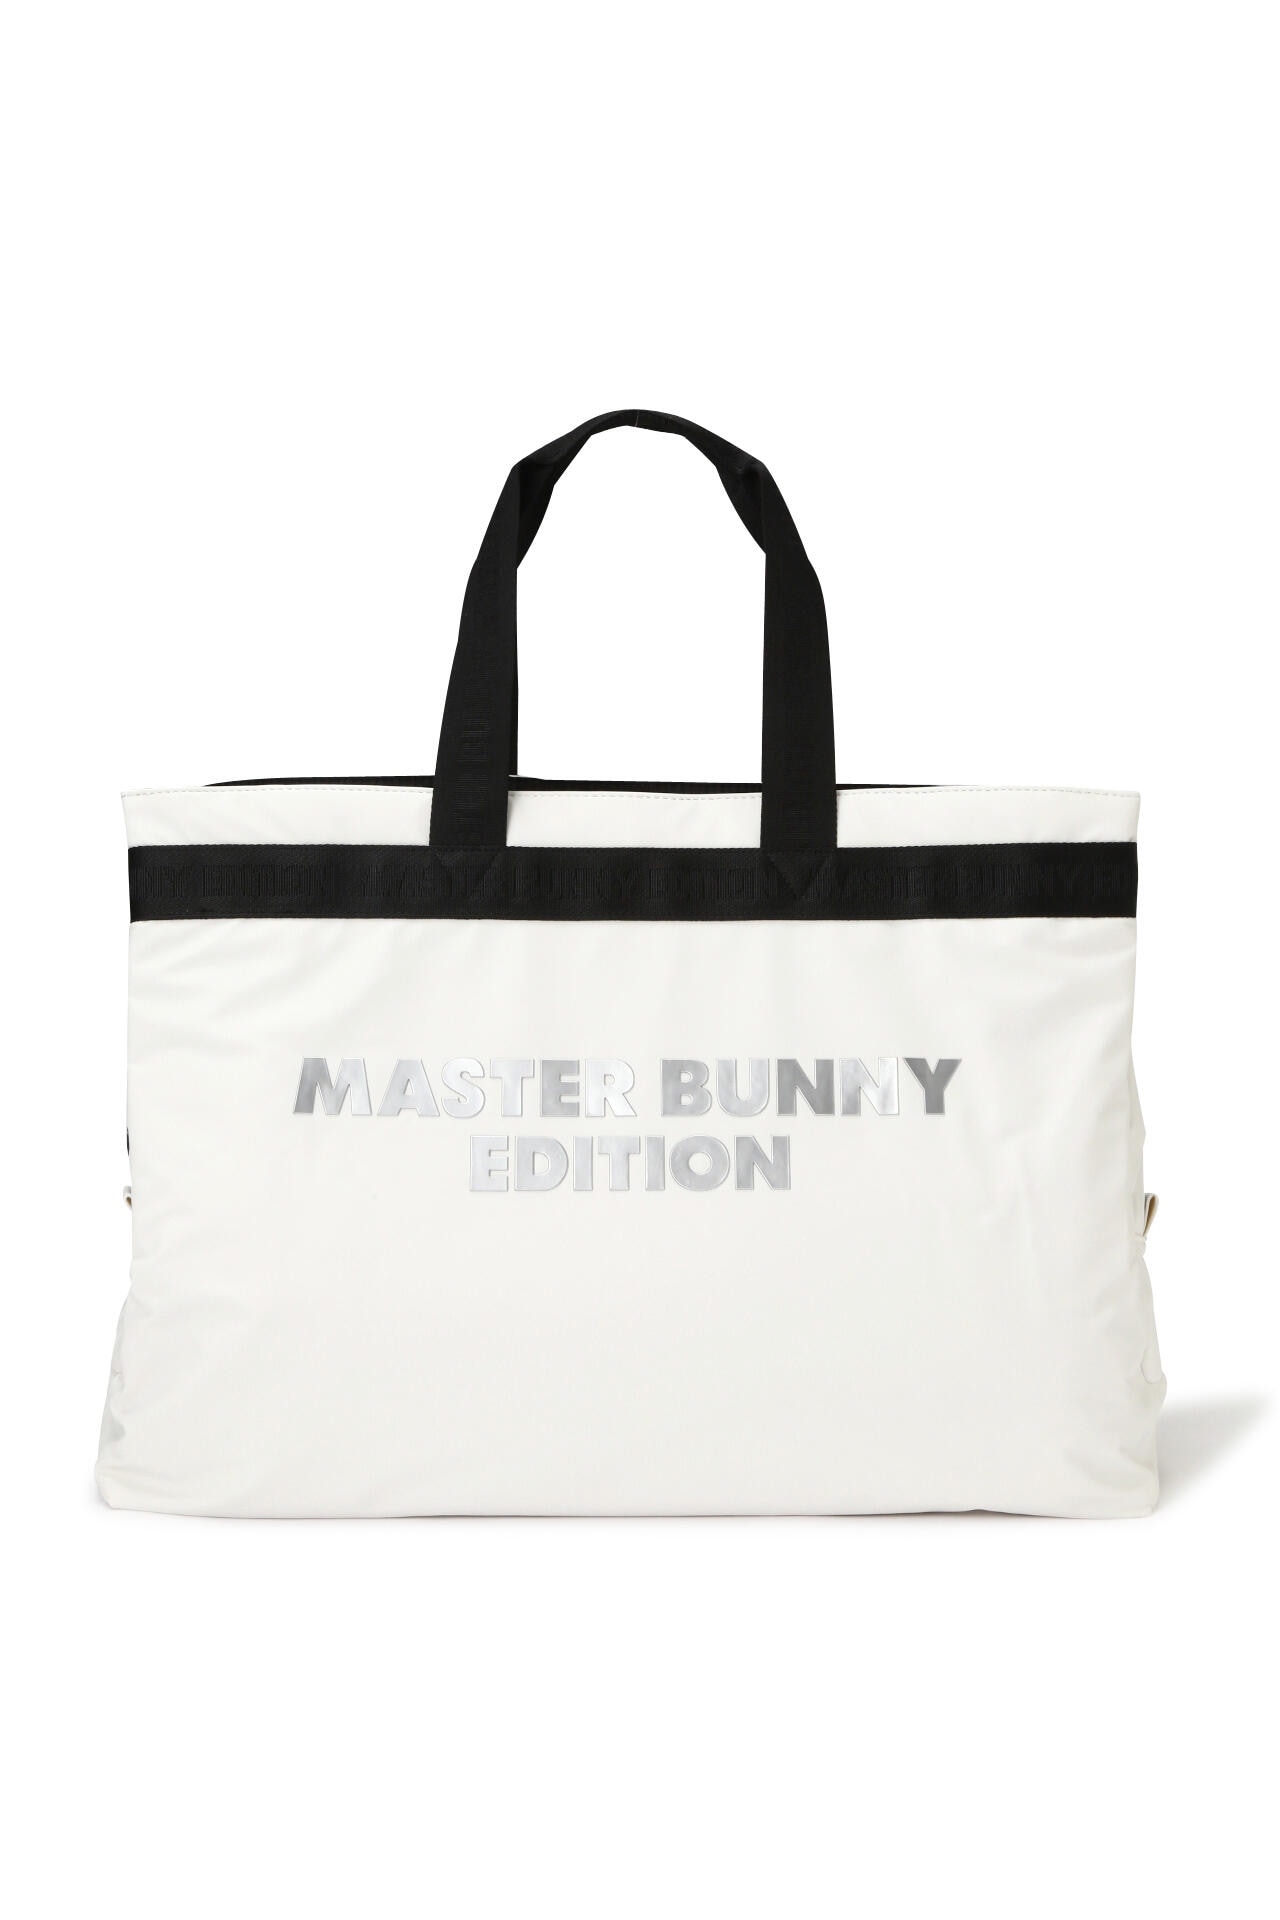 【新品・未使用品】Master Bunny Edition 本革バックパック